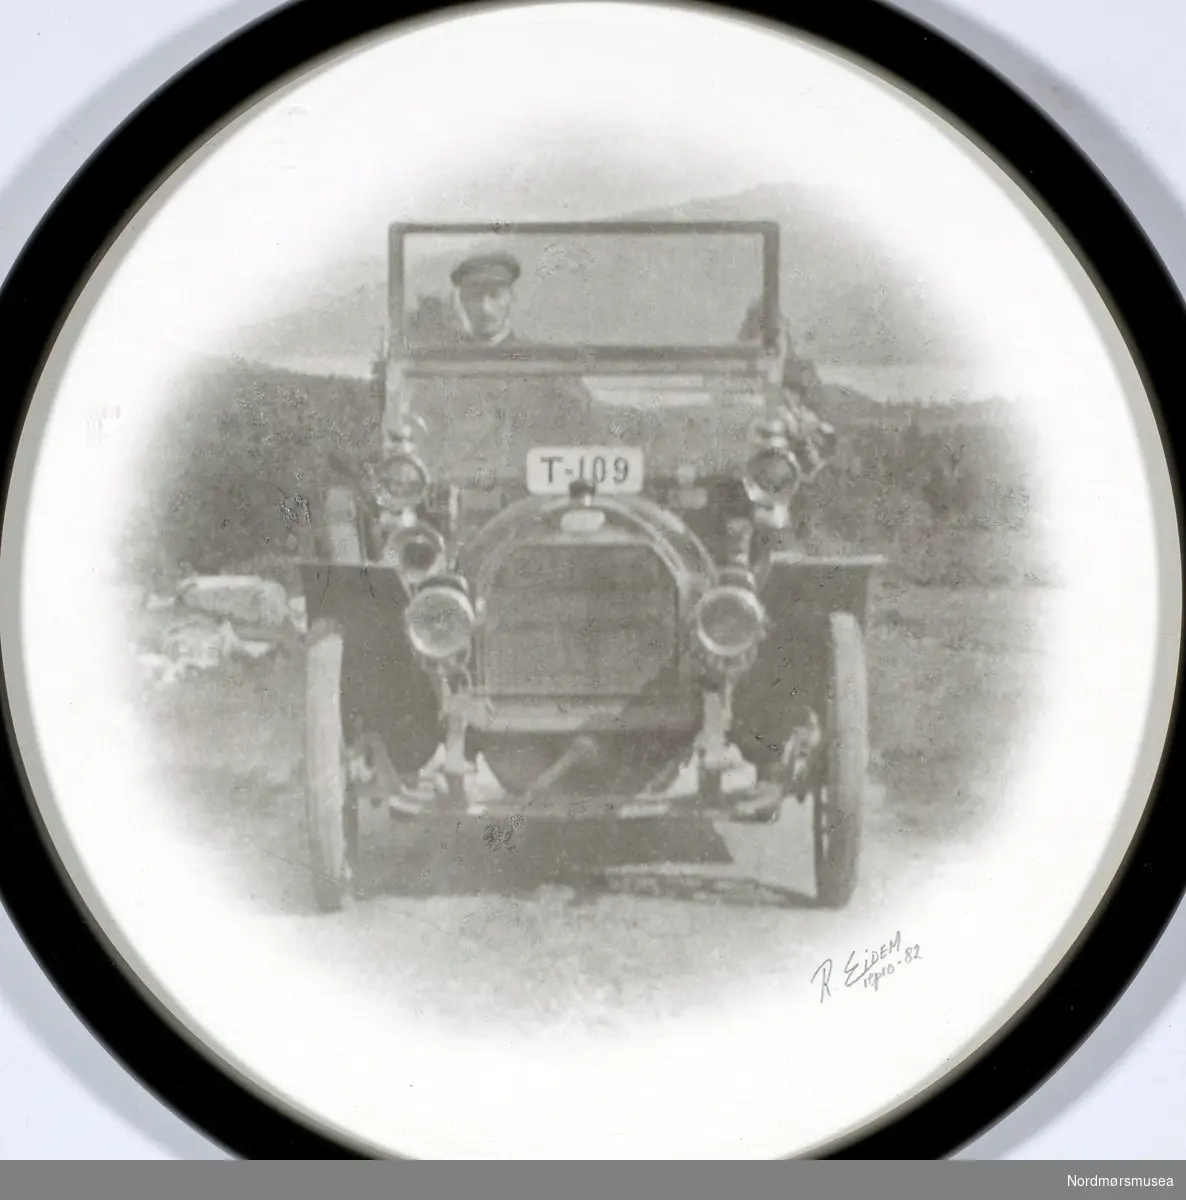 bil, med registreringsskiltene T-109 plassert på toppen av radiatoren. Datering av fotografiet er usikkert, men trolig omkring 1903 til 1910. Bildet er reprodusert i 1982 av R. Eidem. Se også reg. nr. KMb-2008-050.0051. Fra Nordmøre museums fotosamlinger.





Bilen er ikke en Ford T, bl.a. fordi den hadde forfjær på tvers over forakselen. Denne har langsgående fjærer. Skiltet er ikke plassert på toppen av radiatoren (upraktisk), men i  nerkant av frontruteramma. Registreringsnummeret T-109 viser at bildet ikke kan være tatt før 1. april 1913. Først da trådte motorvognloven av 1912 i kraft, som innførte fylkesbokstav på bilskilt.
Ivar E. Stav - 27.09.2016 kl. 14:10

Stoewer 1911. Se kommenterer på annet identisk bilde.
Trygve Krogsæter - 27.09.2016